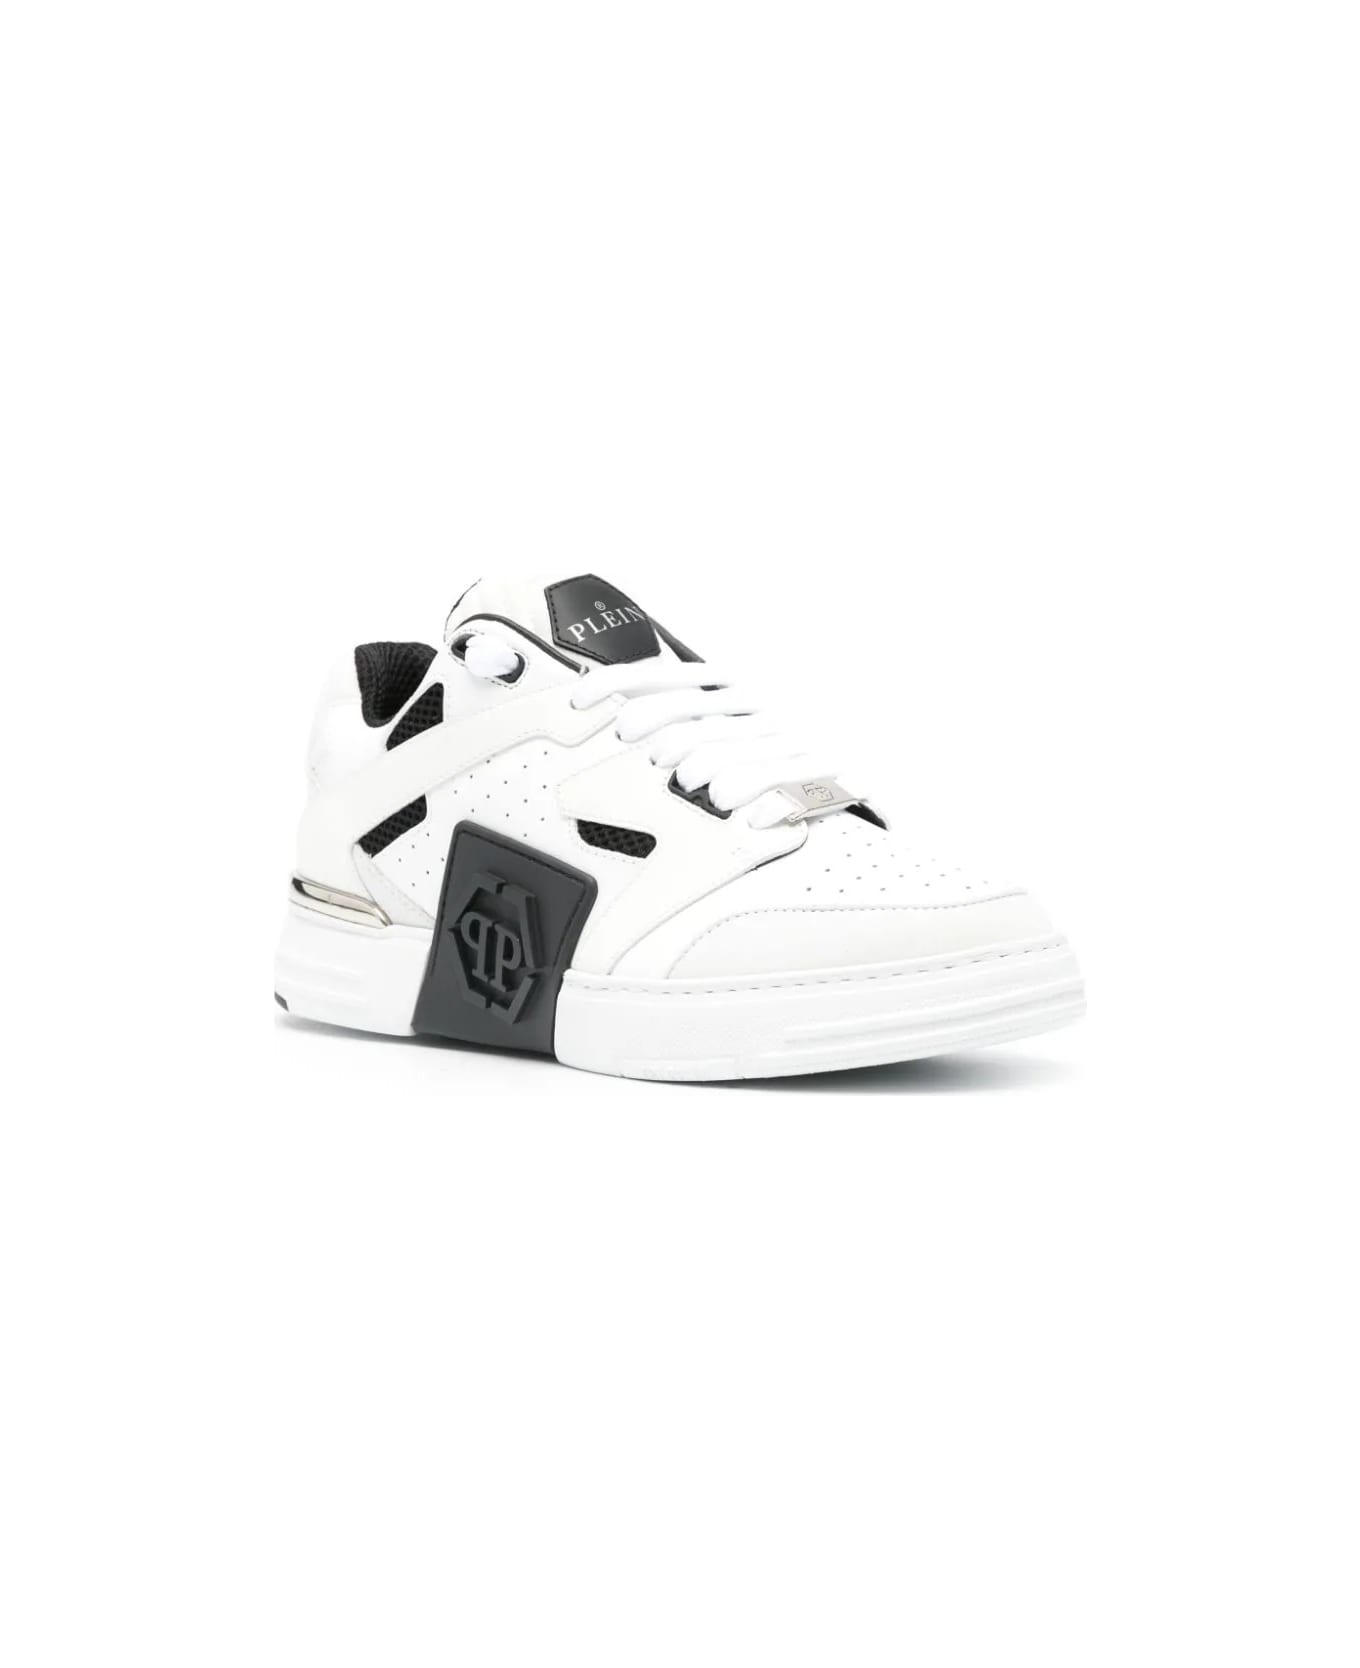 Philipp Plein White And Black Phantom Street Sneakers - White